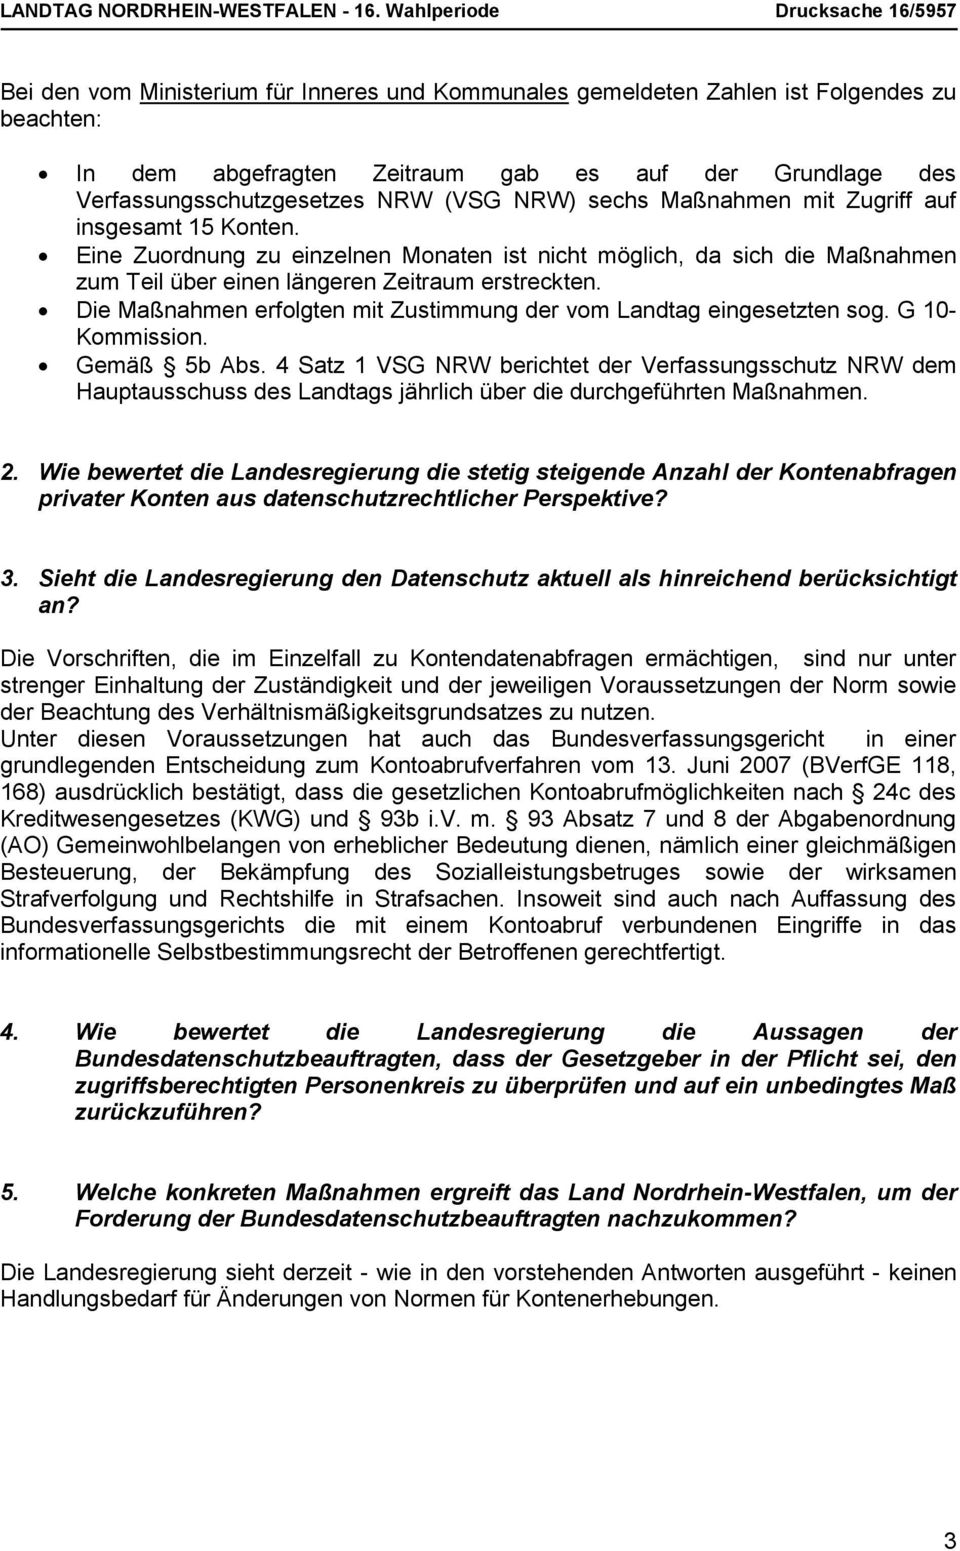 Verfassungsschutzgesetzes NRW (VSG NRW) sechs Maßnahmen mit Zugriff auf insgesamt 15 Konten.